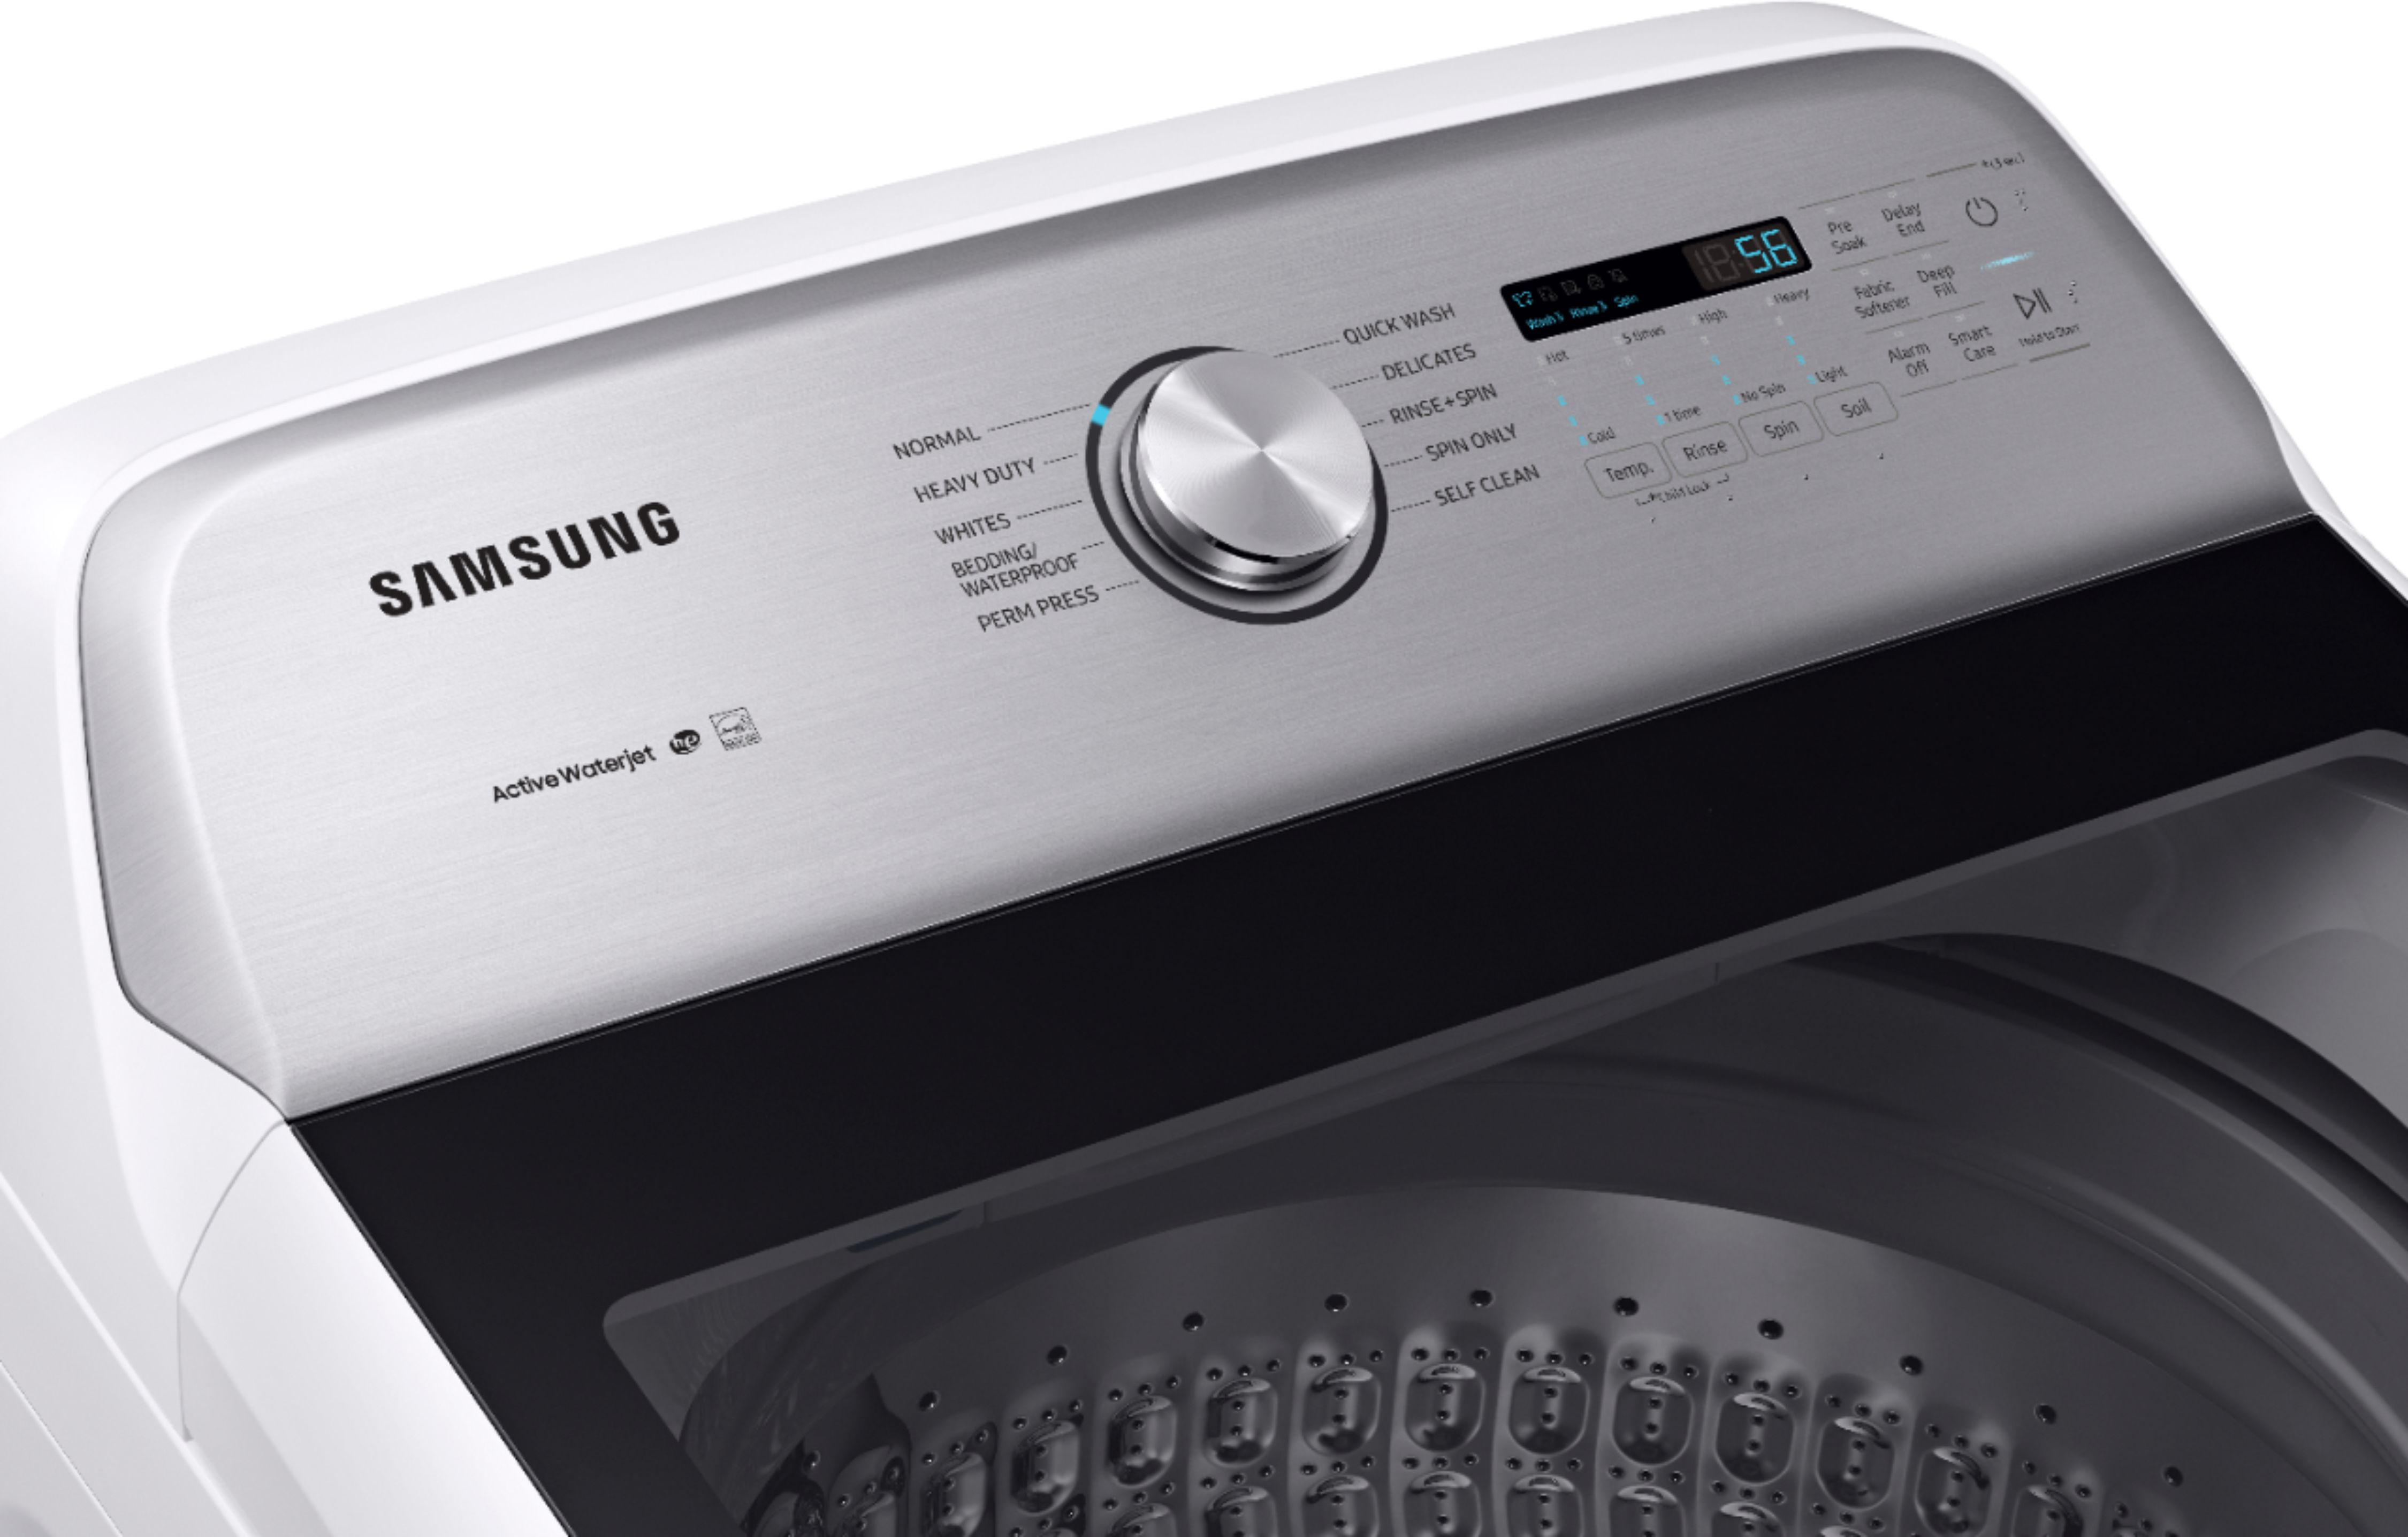 Samsung Dc68 Washer Manual